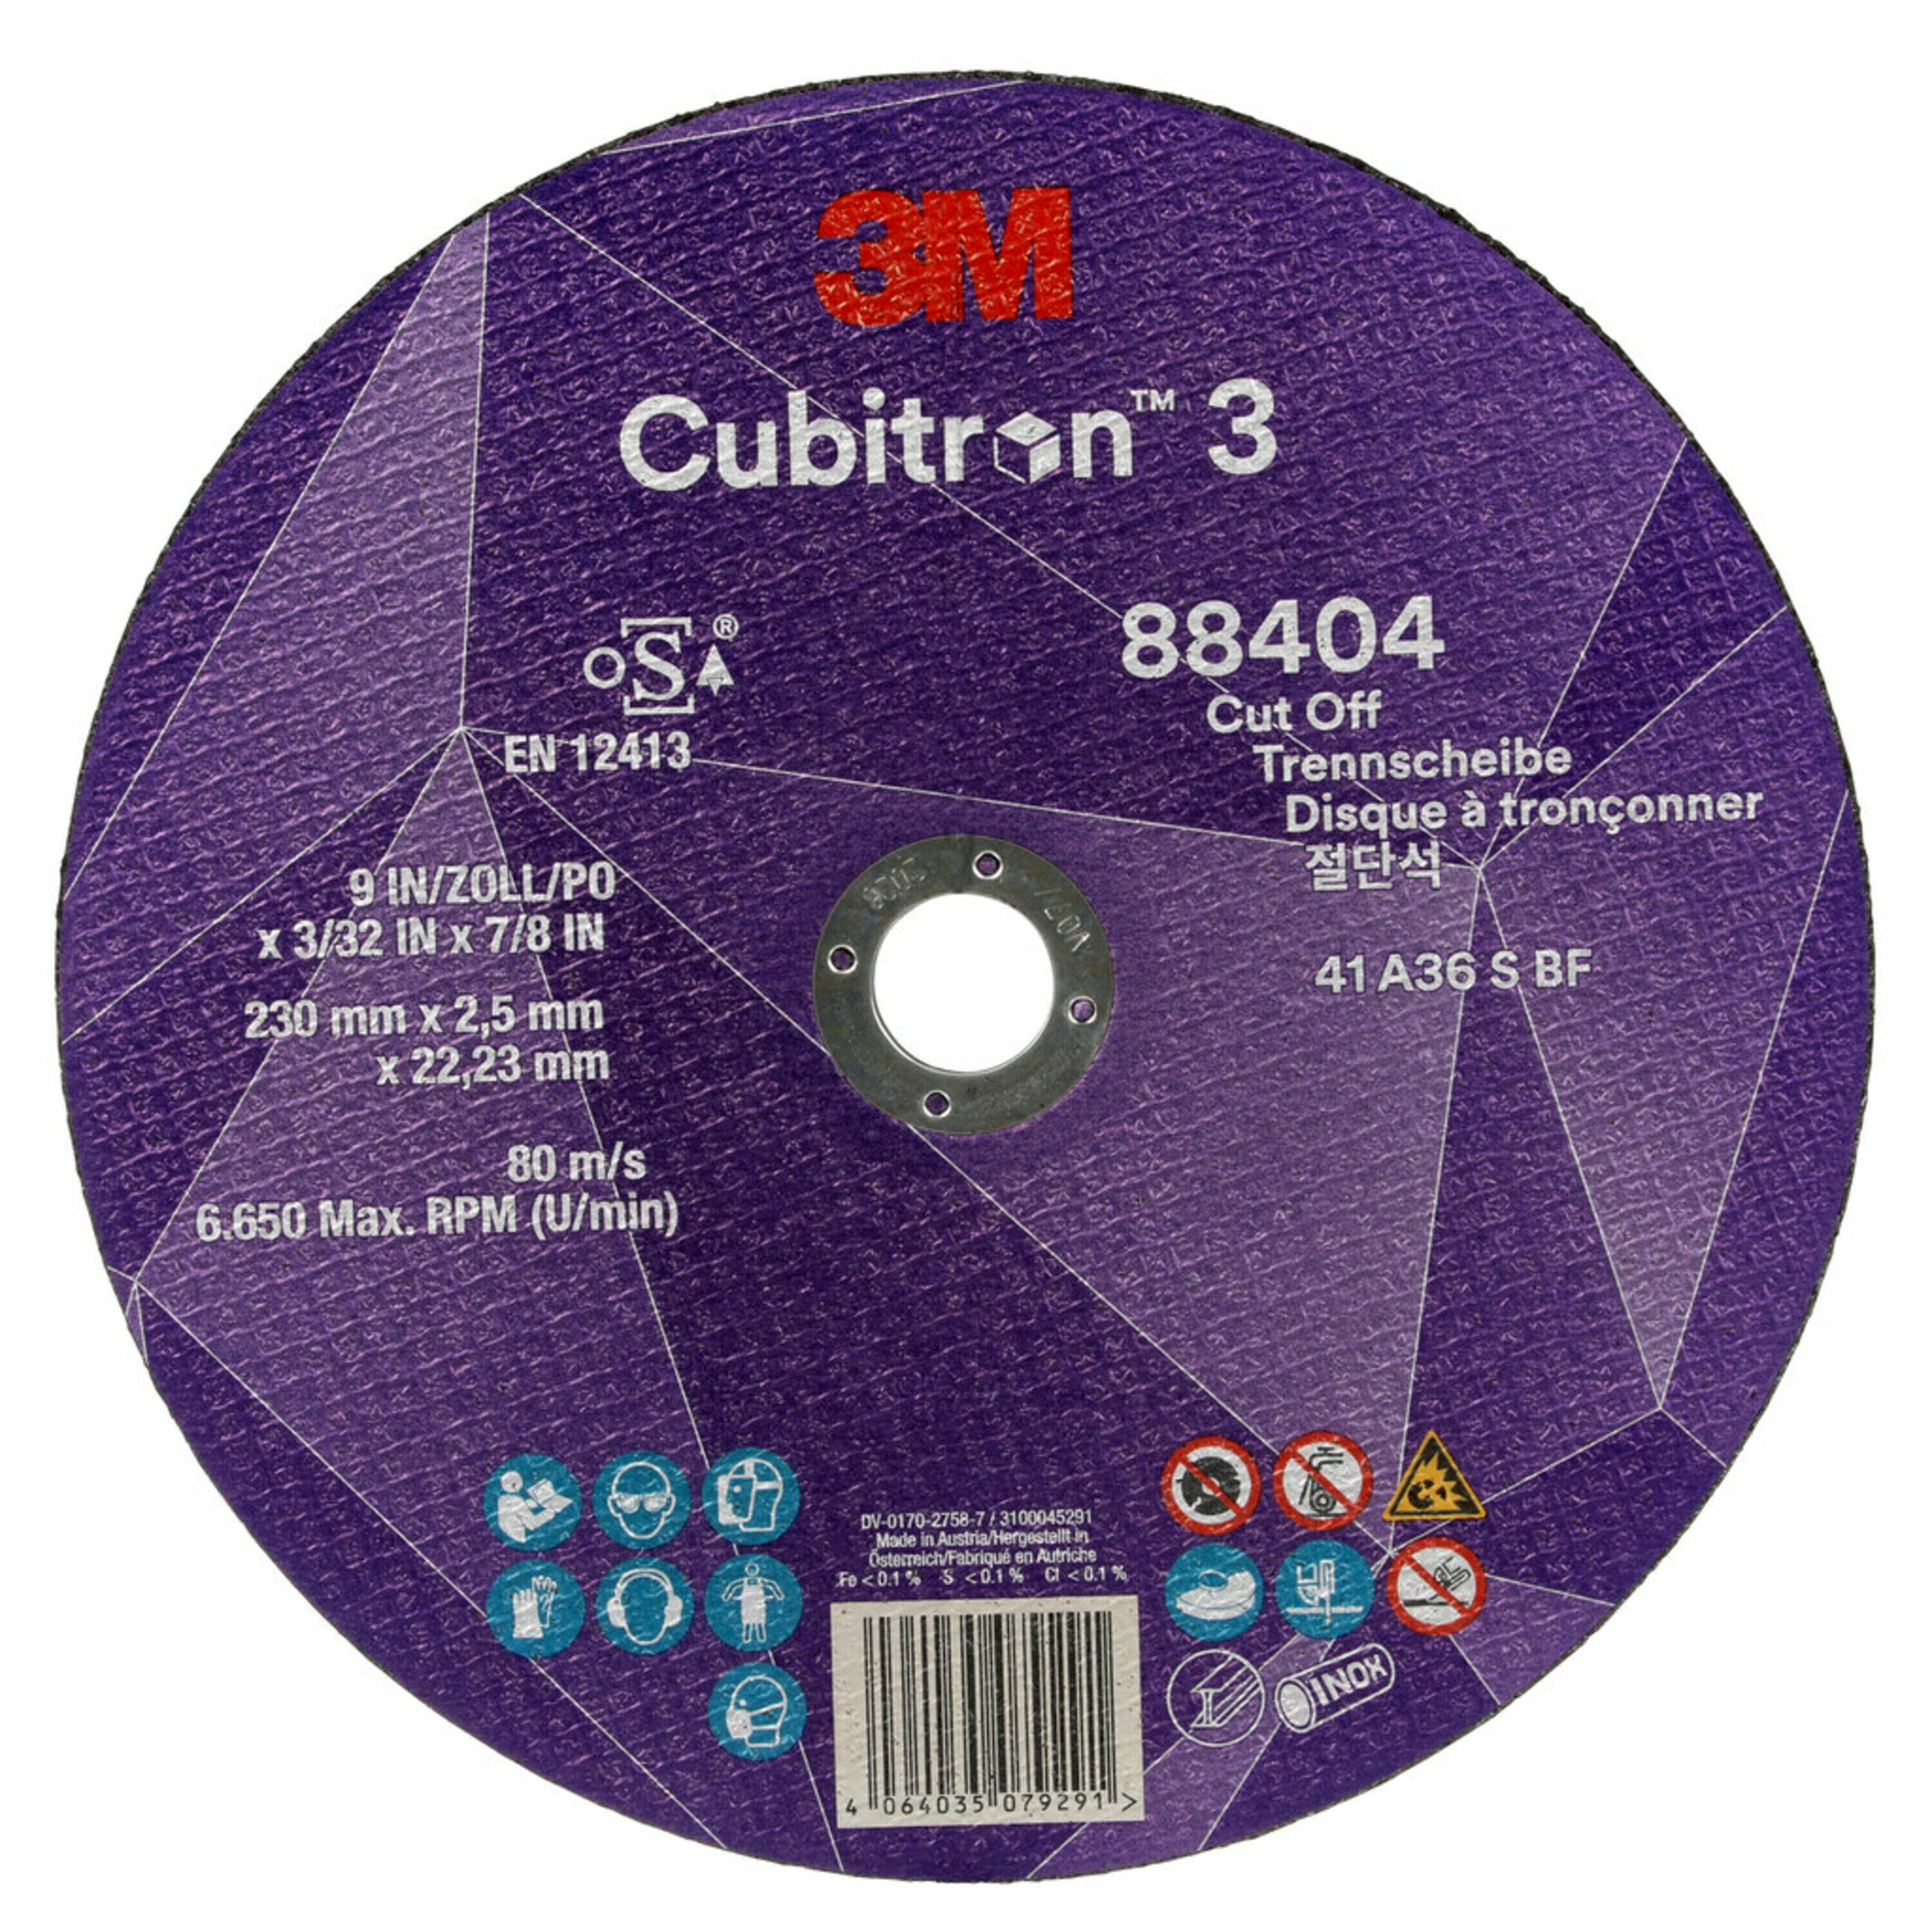 3M Cubitron 3 disco da taglio, 230 mm, 2,5 mm, 22,23 mm, 36 , tipo 41 #88404